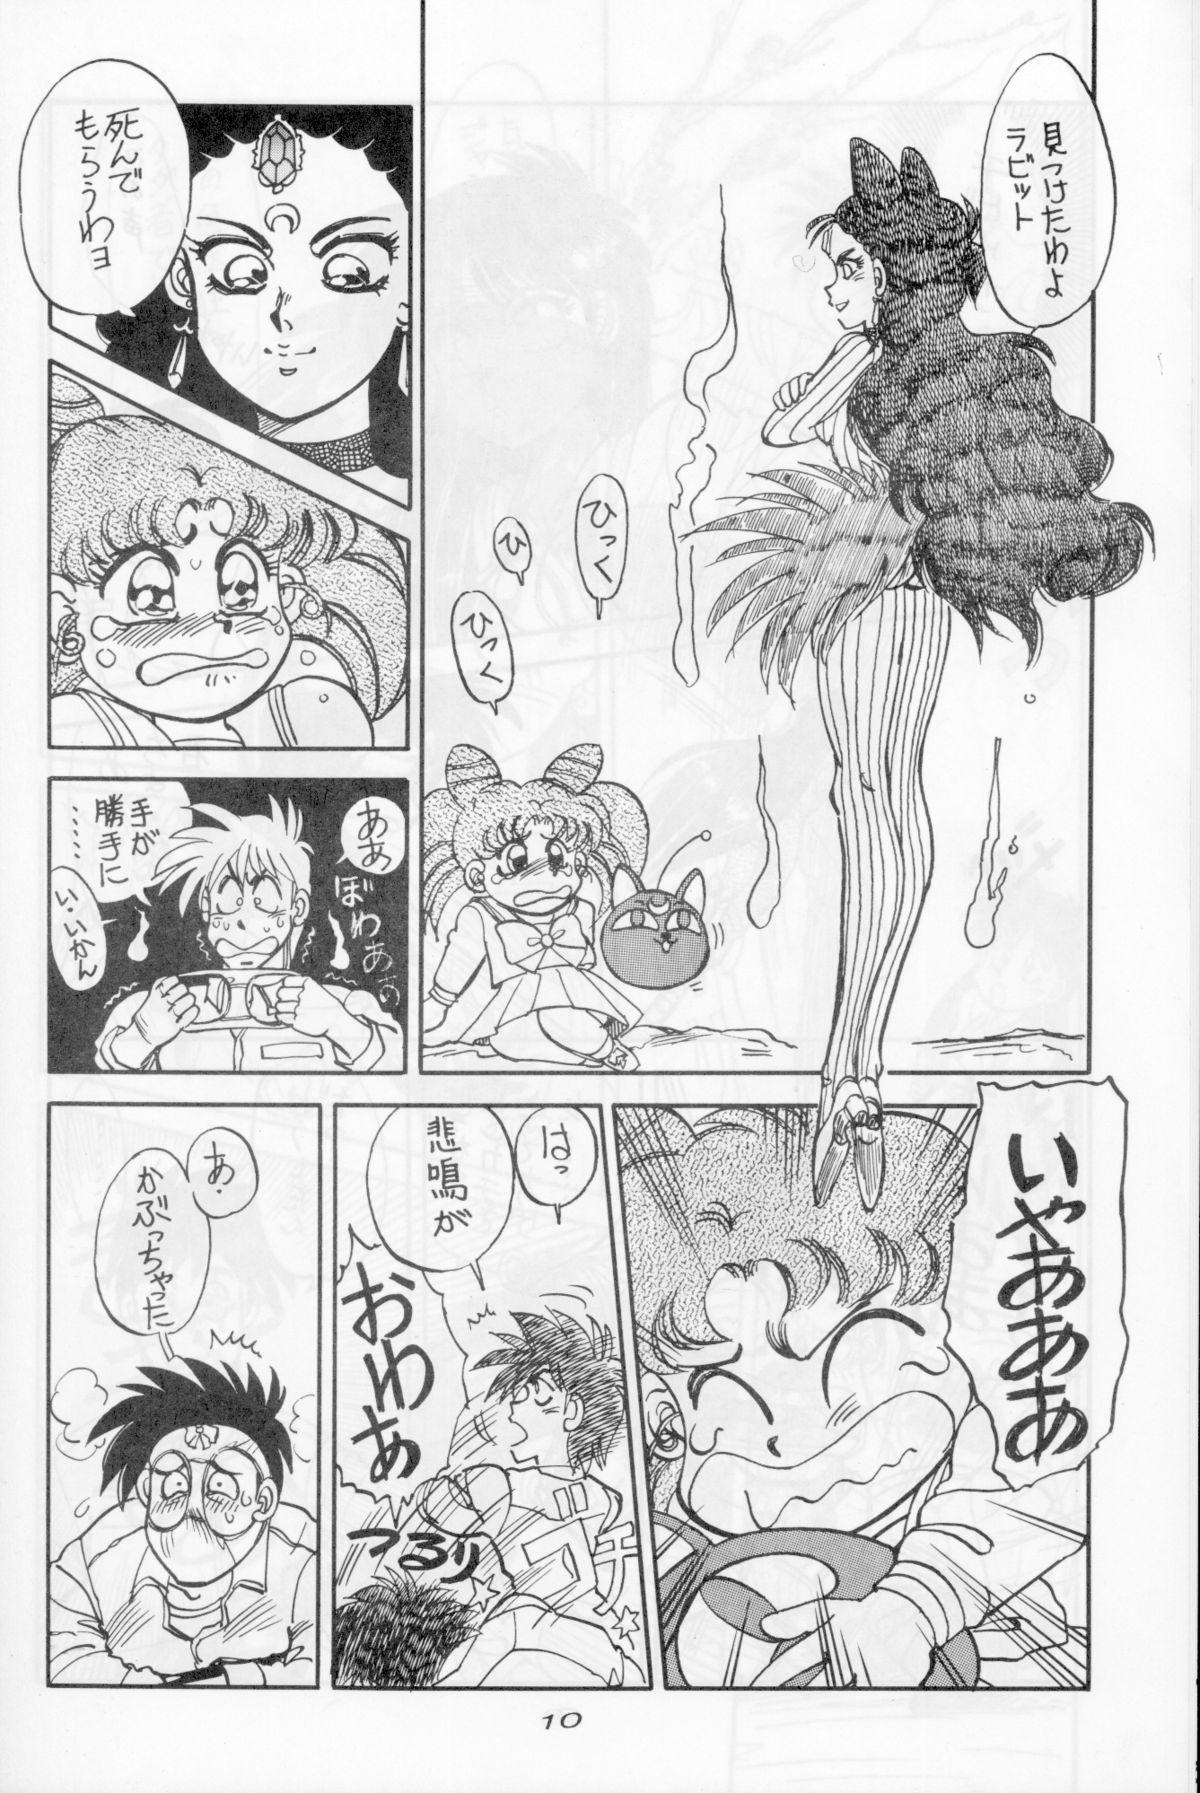 Amiga Mantou 5 - Sailor moon Girlfriend - Page 8